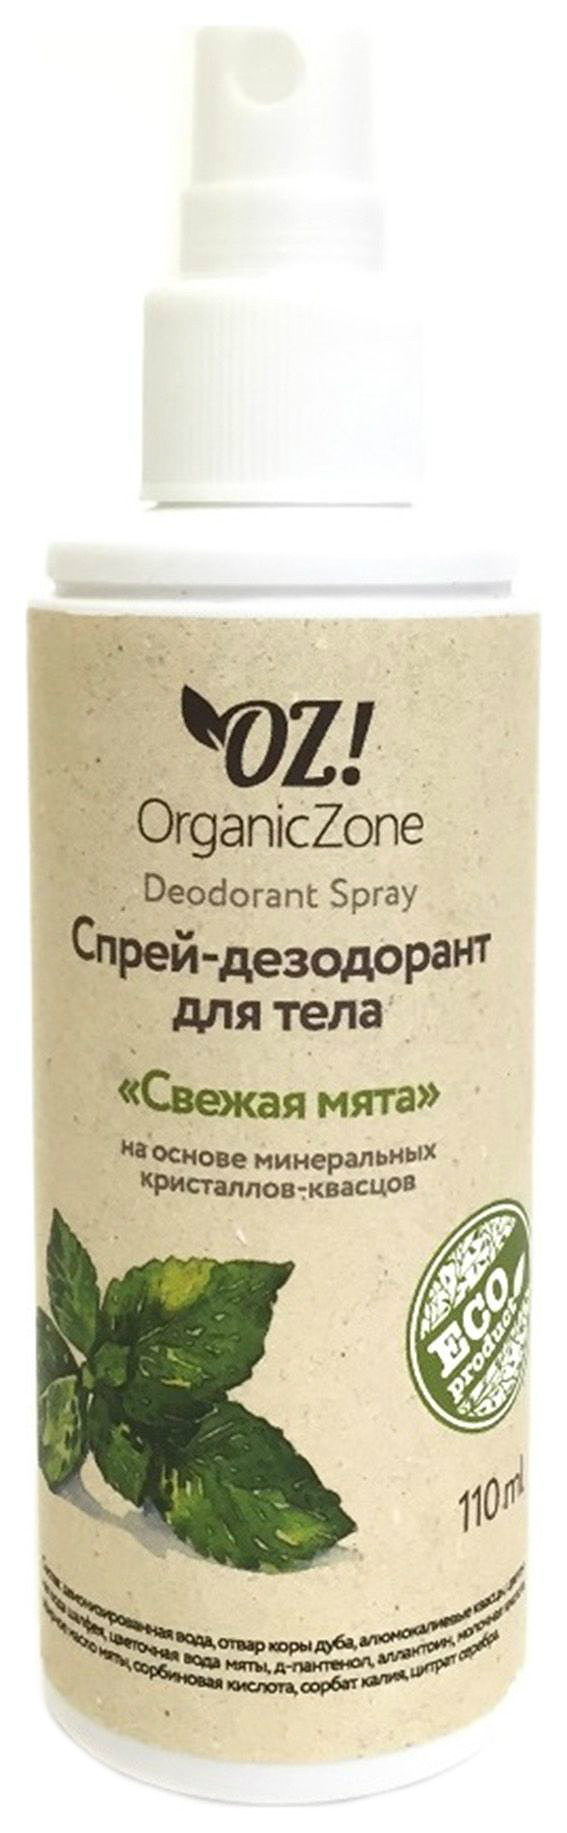 Дезодорант OrganicZone Свежая мята 110 мл organic zone спрей дезодорант для тела свежая мята organic zone 110 мл